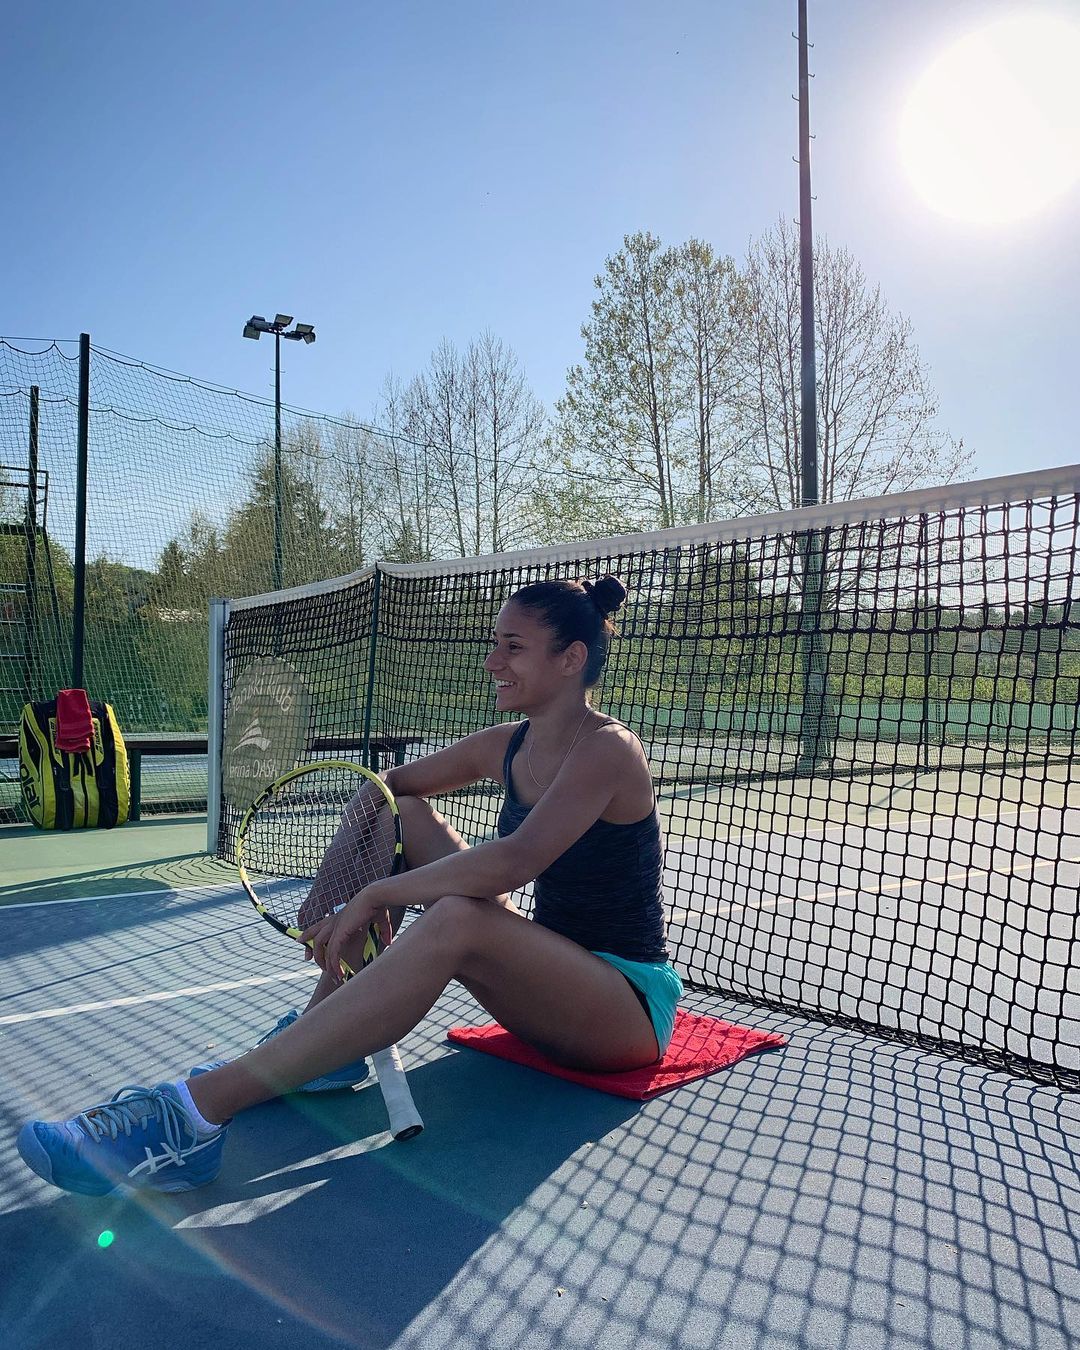 FOTOS Vale la pena echarle un vistazo a la tenista Bojana Jovanovic! - Photo 1